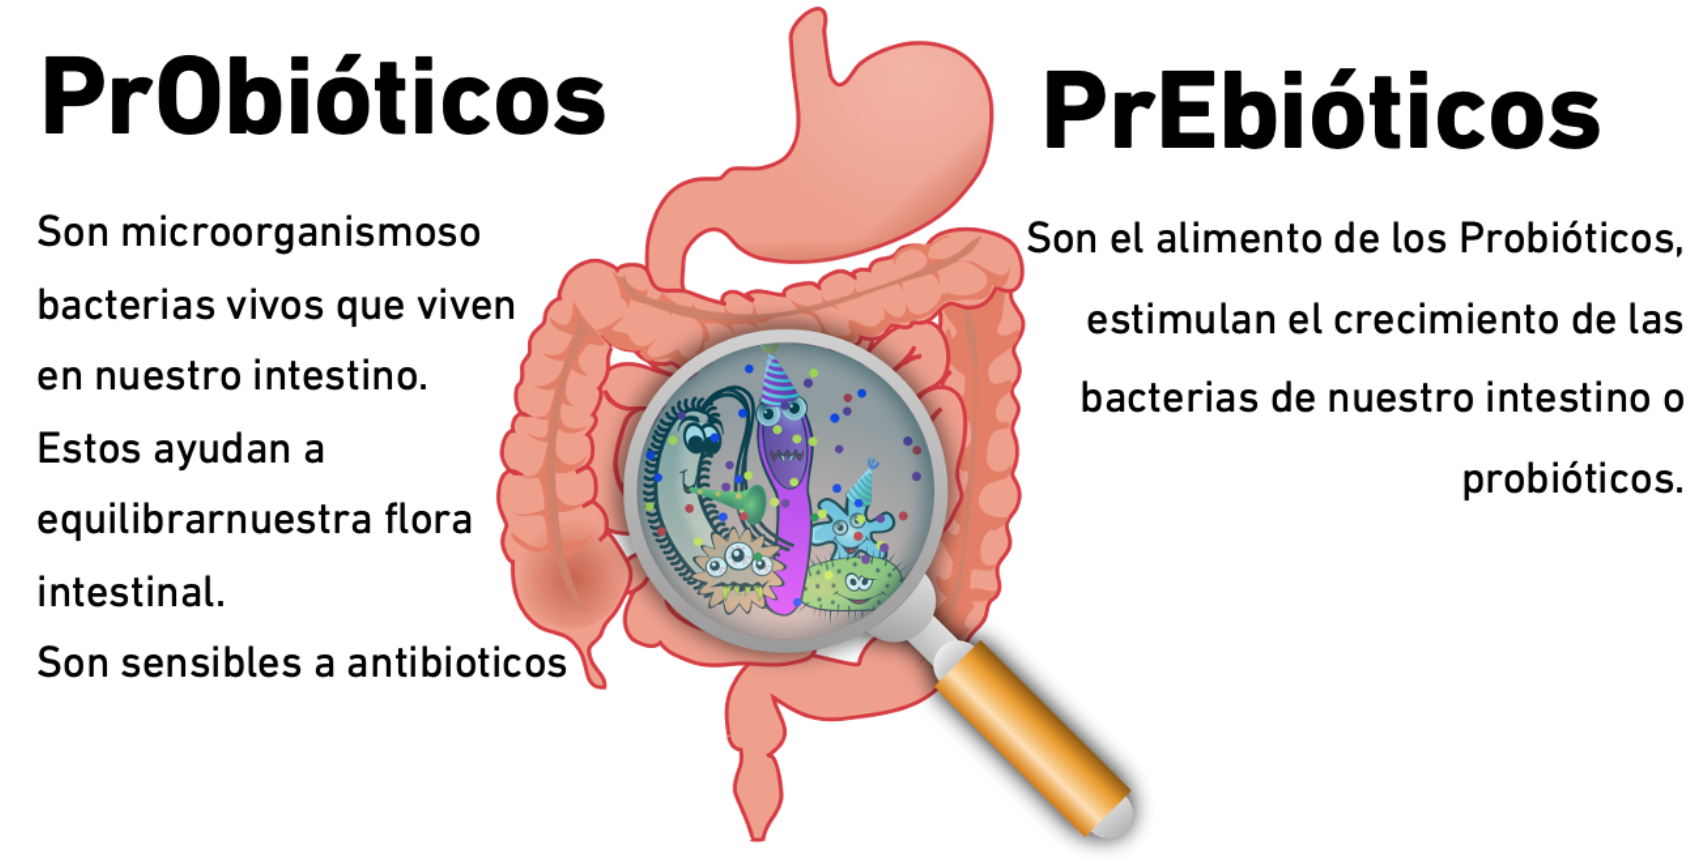 Qué son los prebióticos?